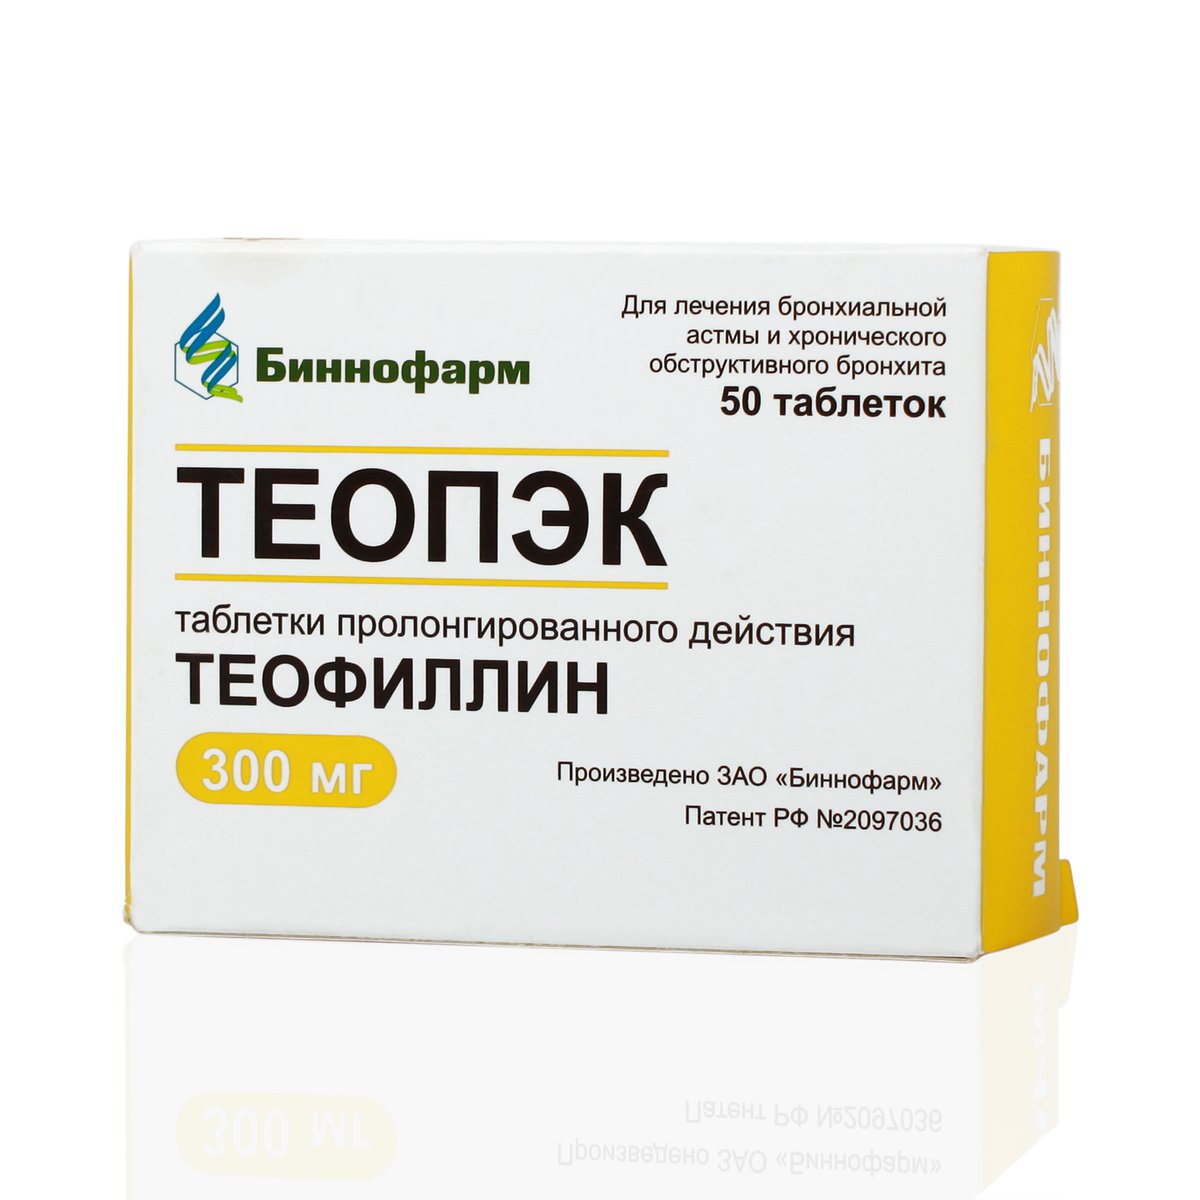 Теопэк ретард (таблетки, 50 шт, 300 мг) - цена,  онлайн  .